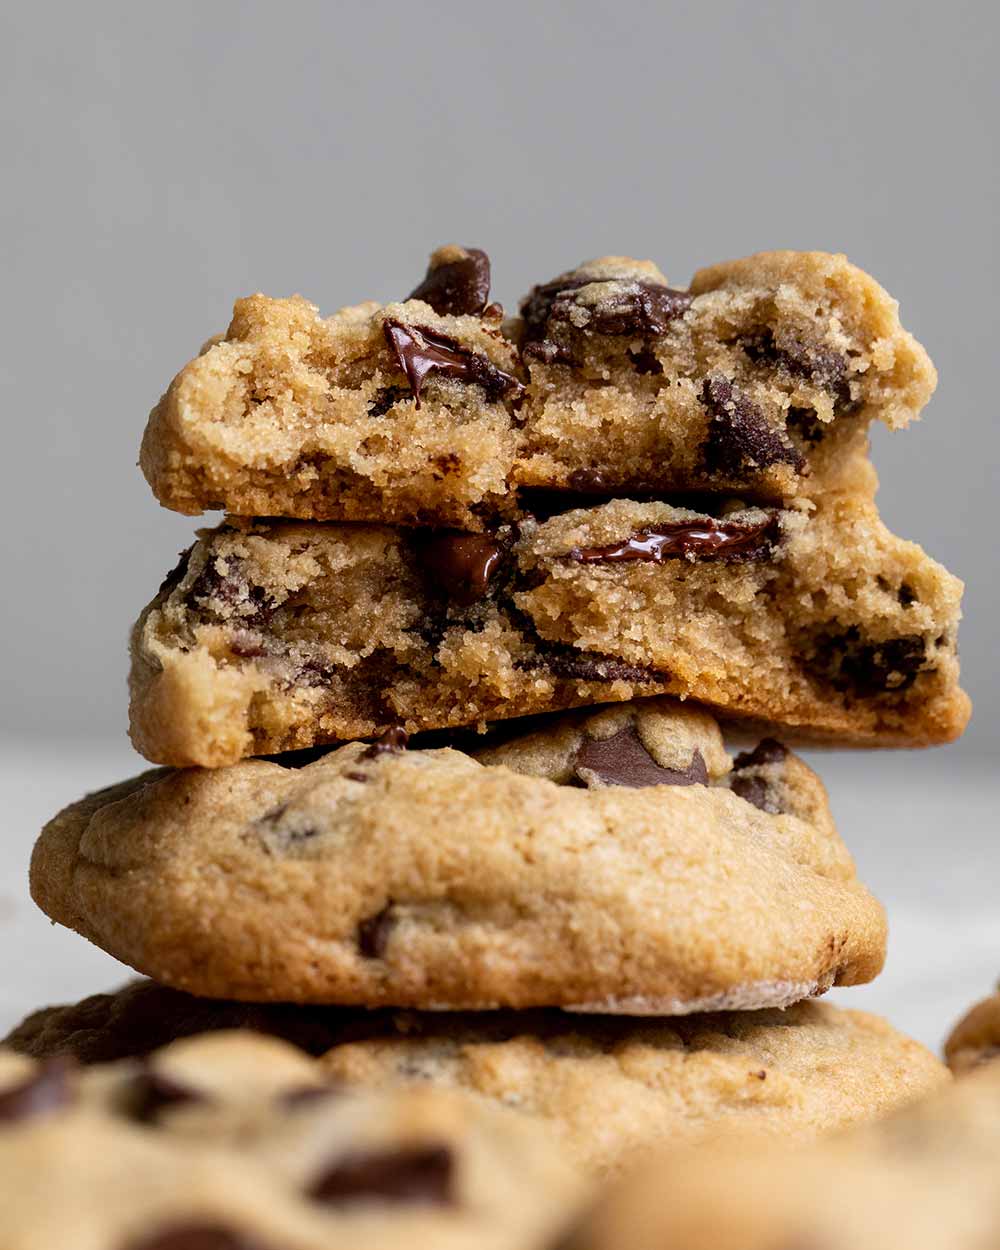 https://www.ottosnaturals.com/cdn/shop/articles/gluten-free-chocolate-chip-cookies-recipe-featured.jpg?v=1576854517